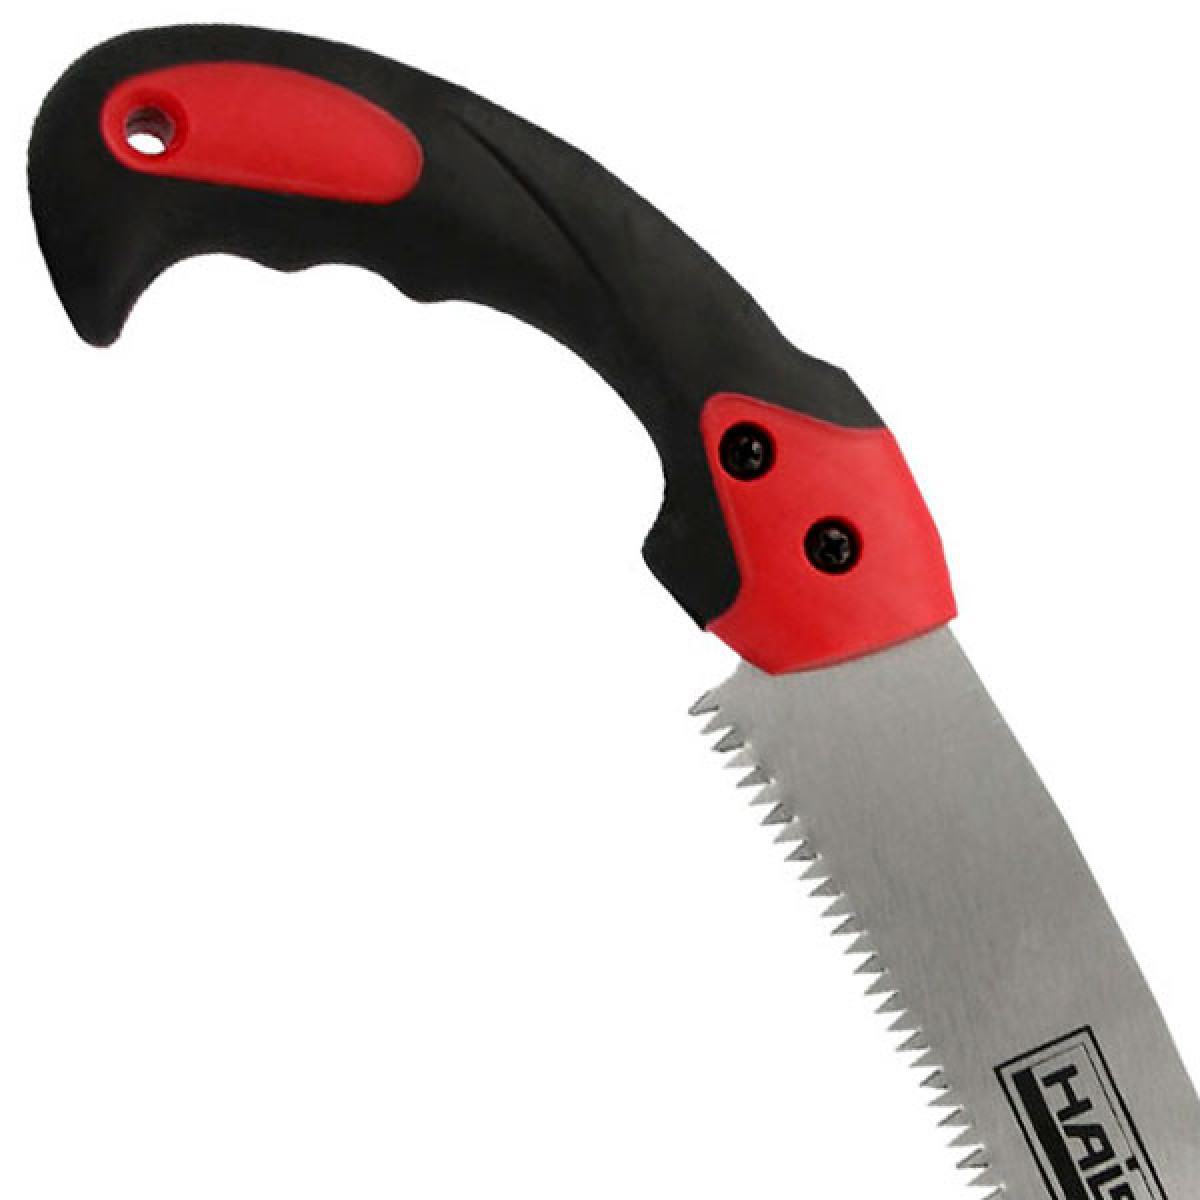 Ножовка садовая HAISSER 40167 330 мм